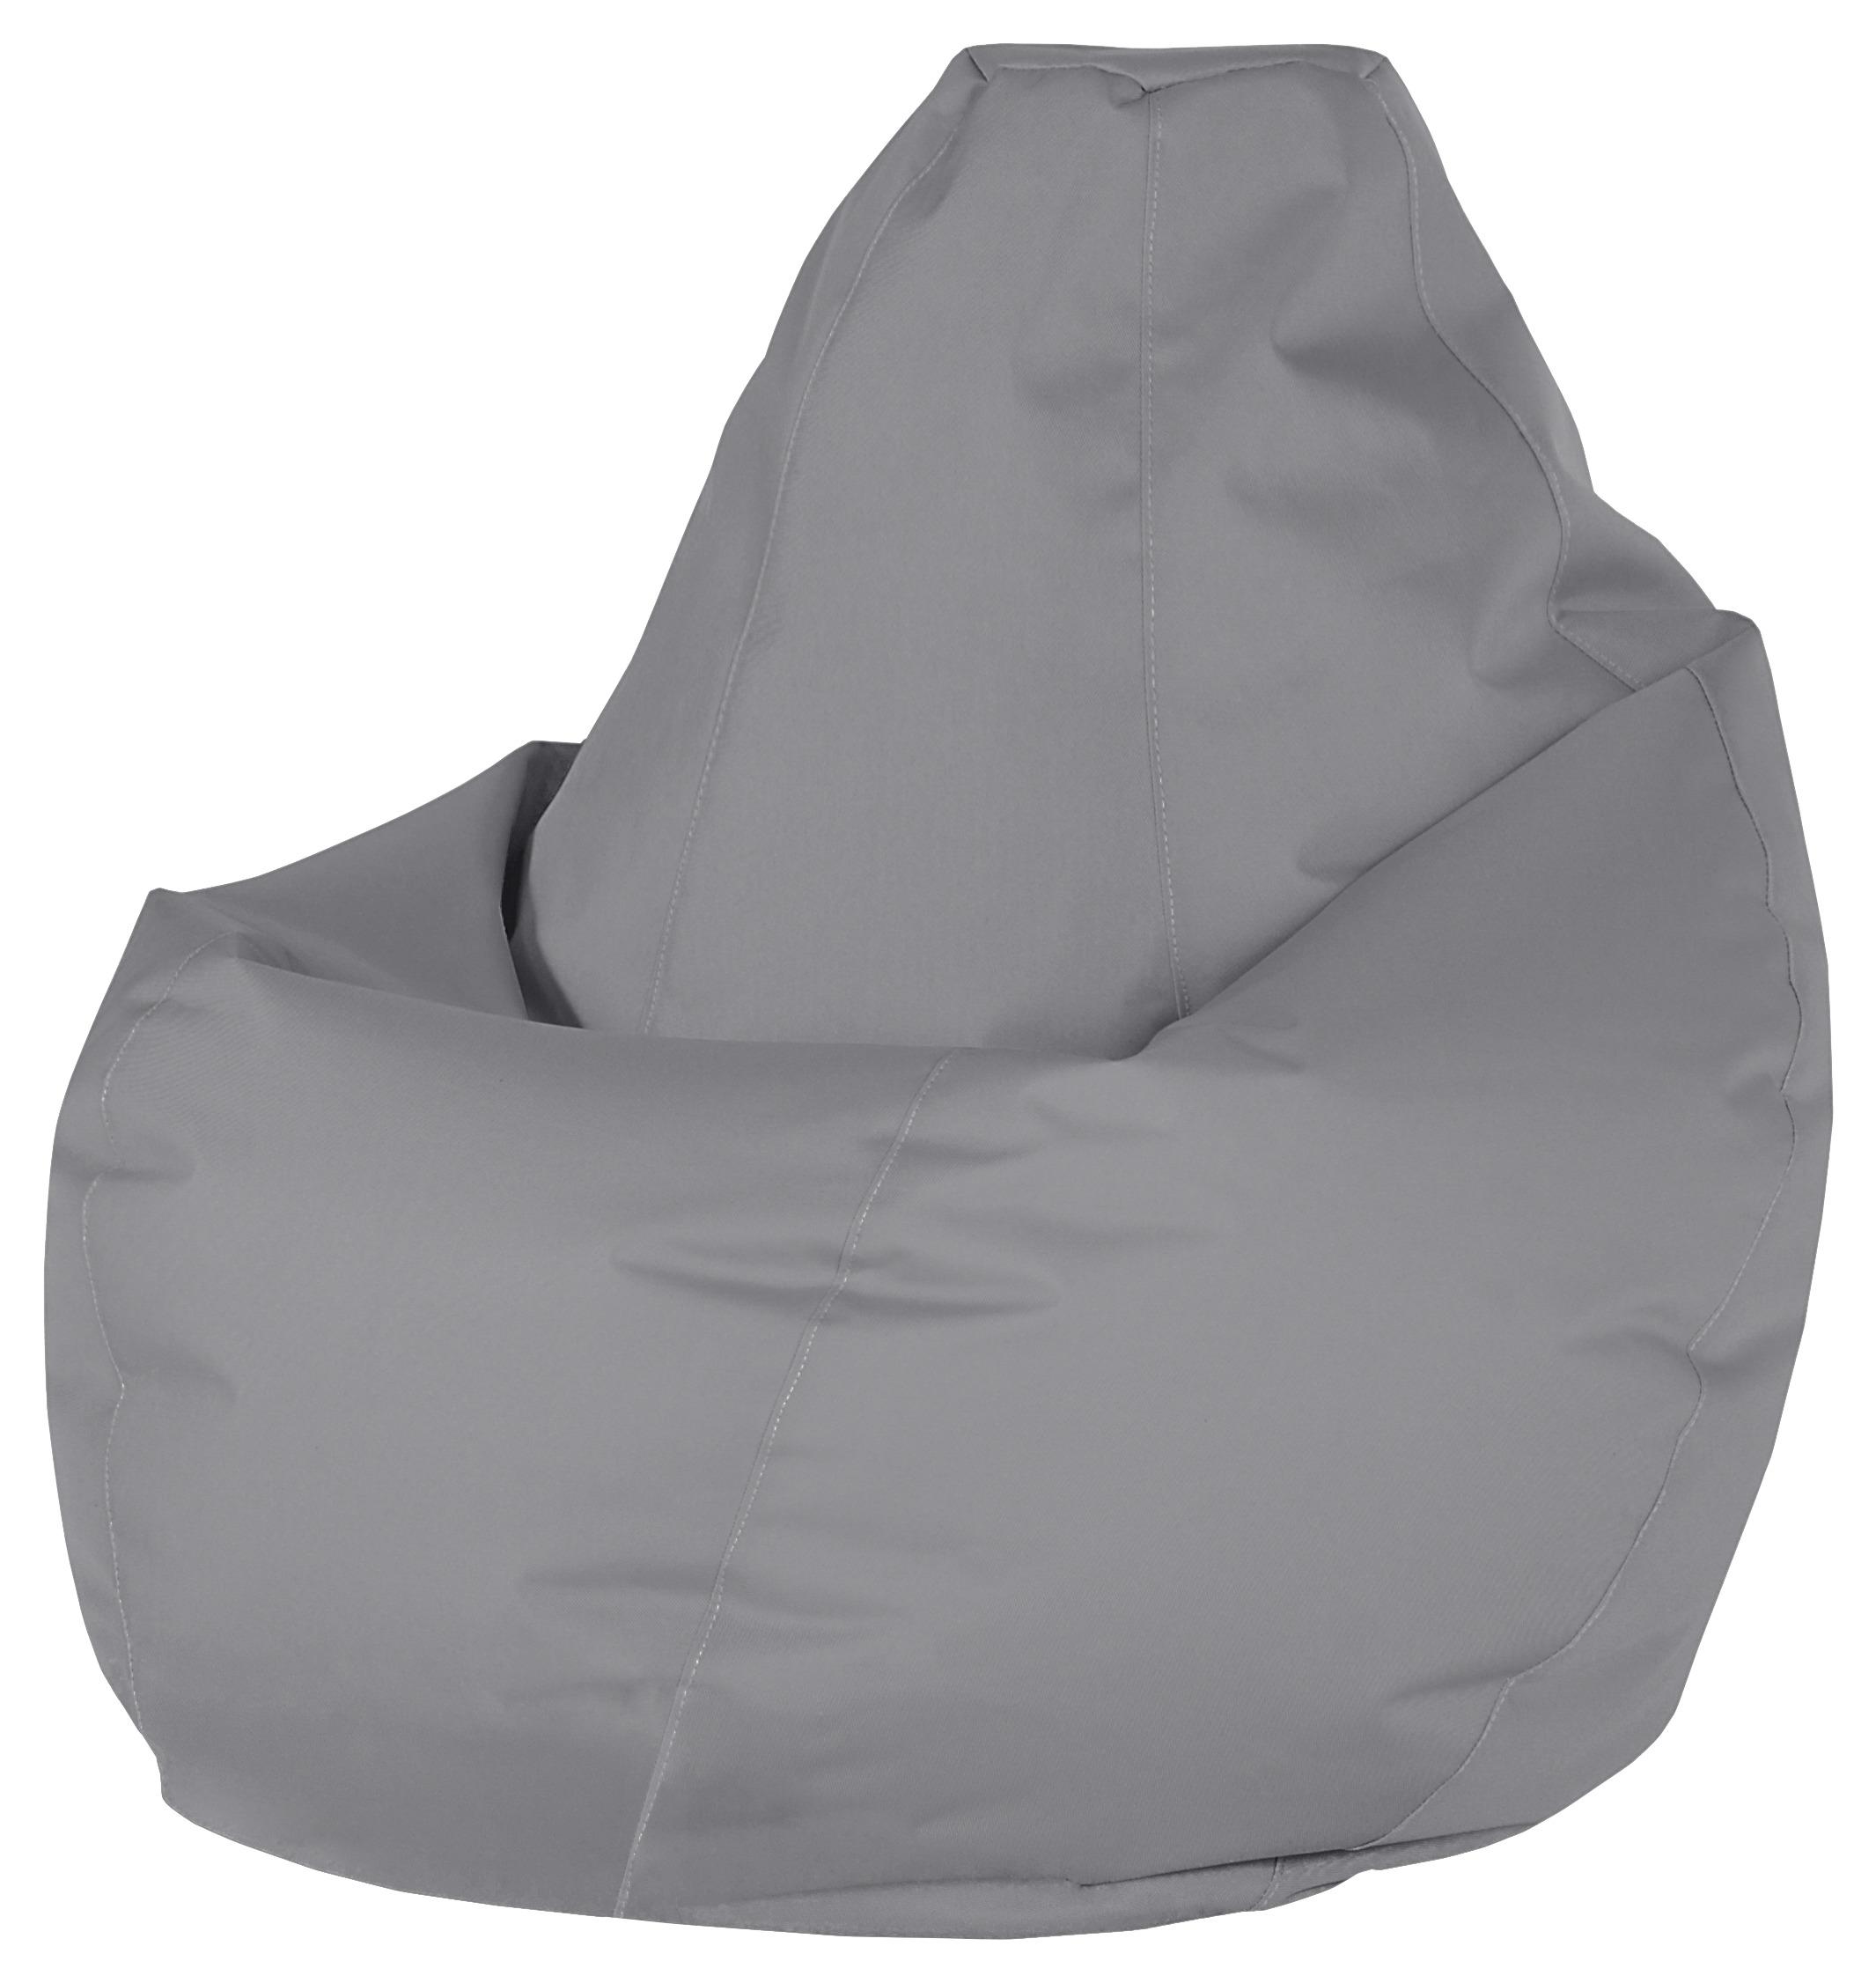 Vreča Za Sedenje Soft L - siva, Moderno, tekstil (120cm) - Modern Living